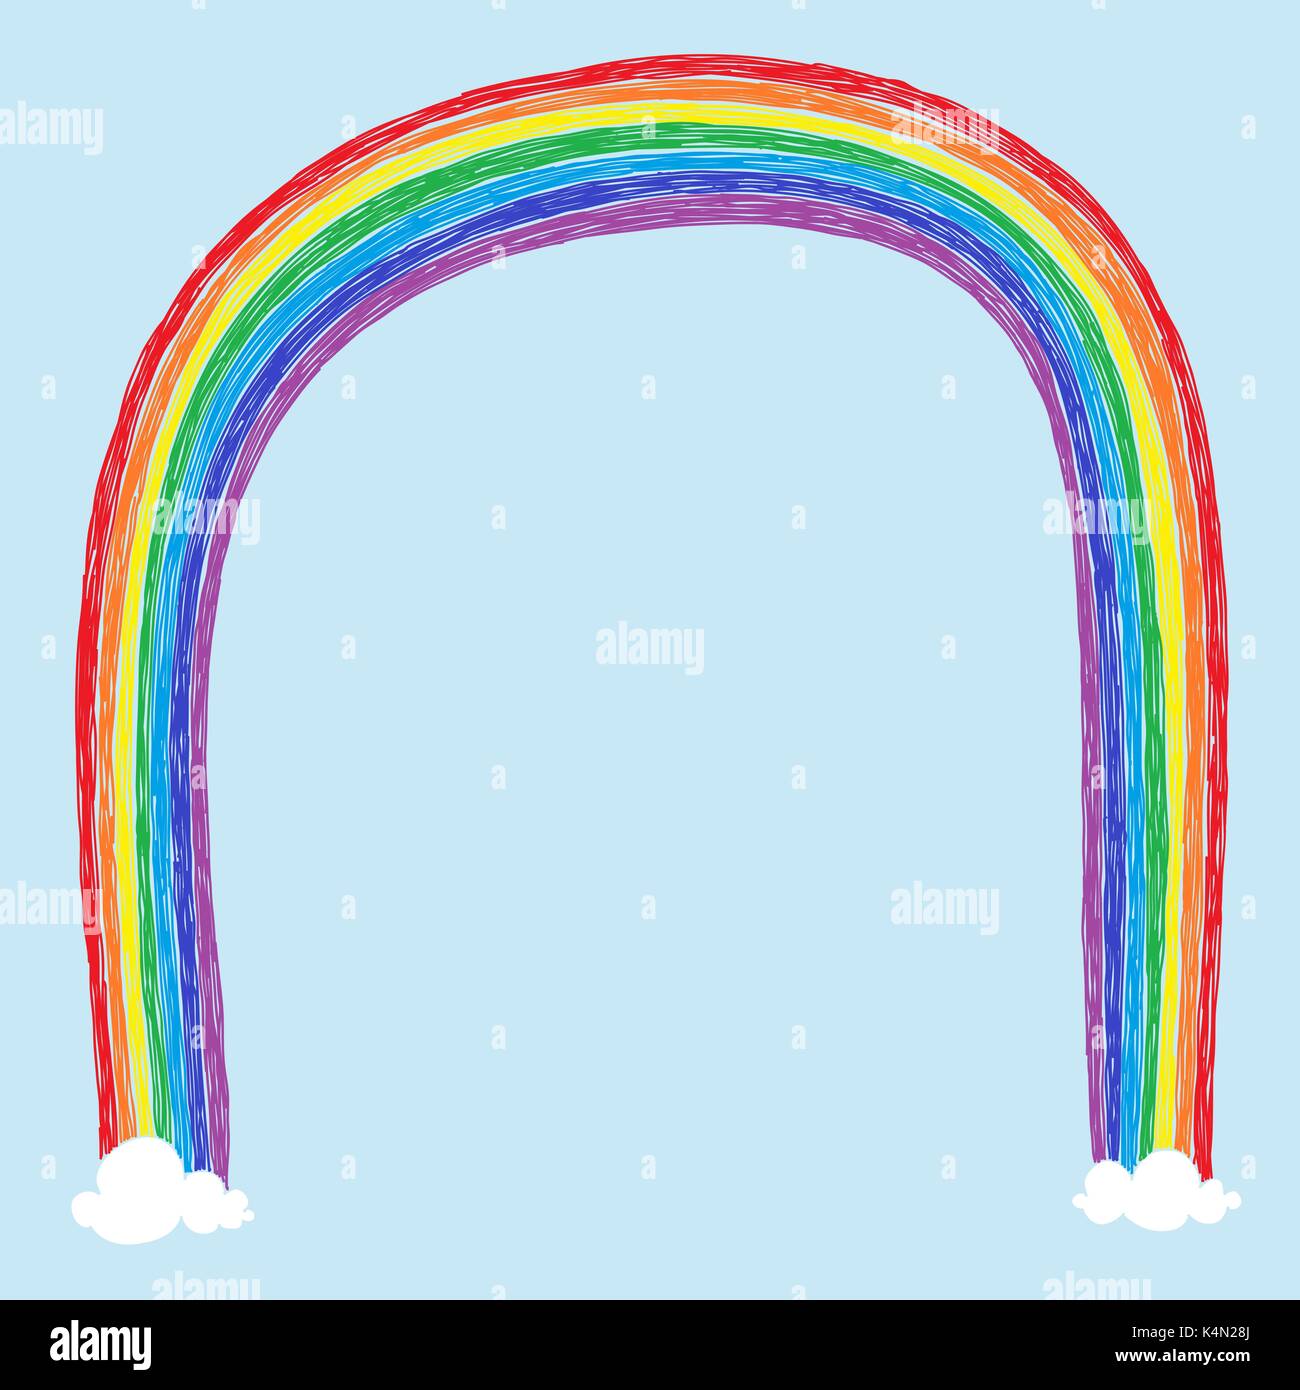 Kindisch unvollkommenen Zeichnung eines Regenbogens und zwei Wolken mit Platz für Ihre Nachricht. Stock Vektor